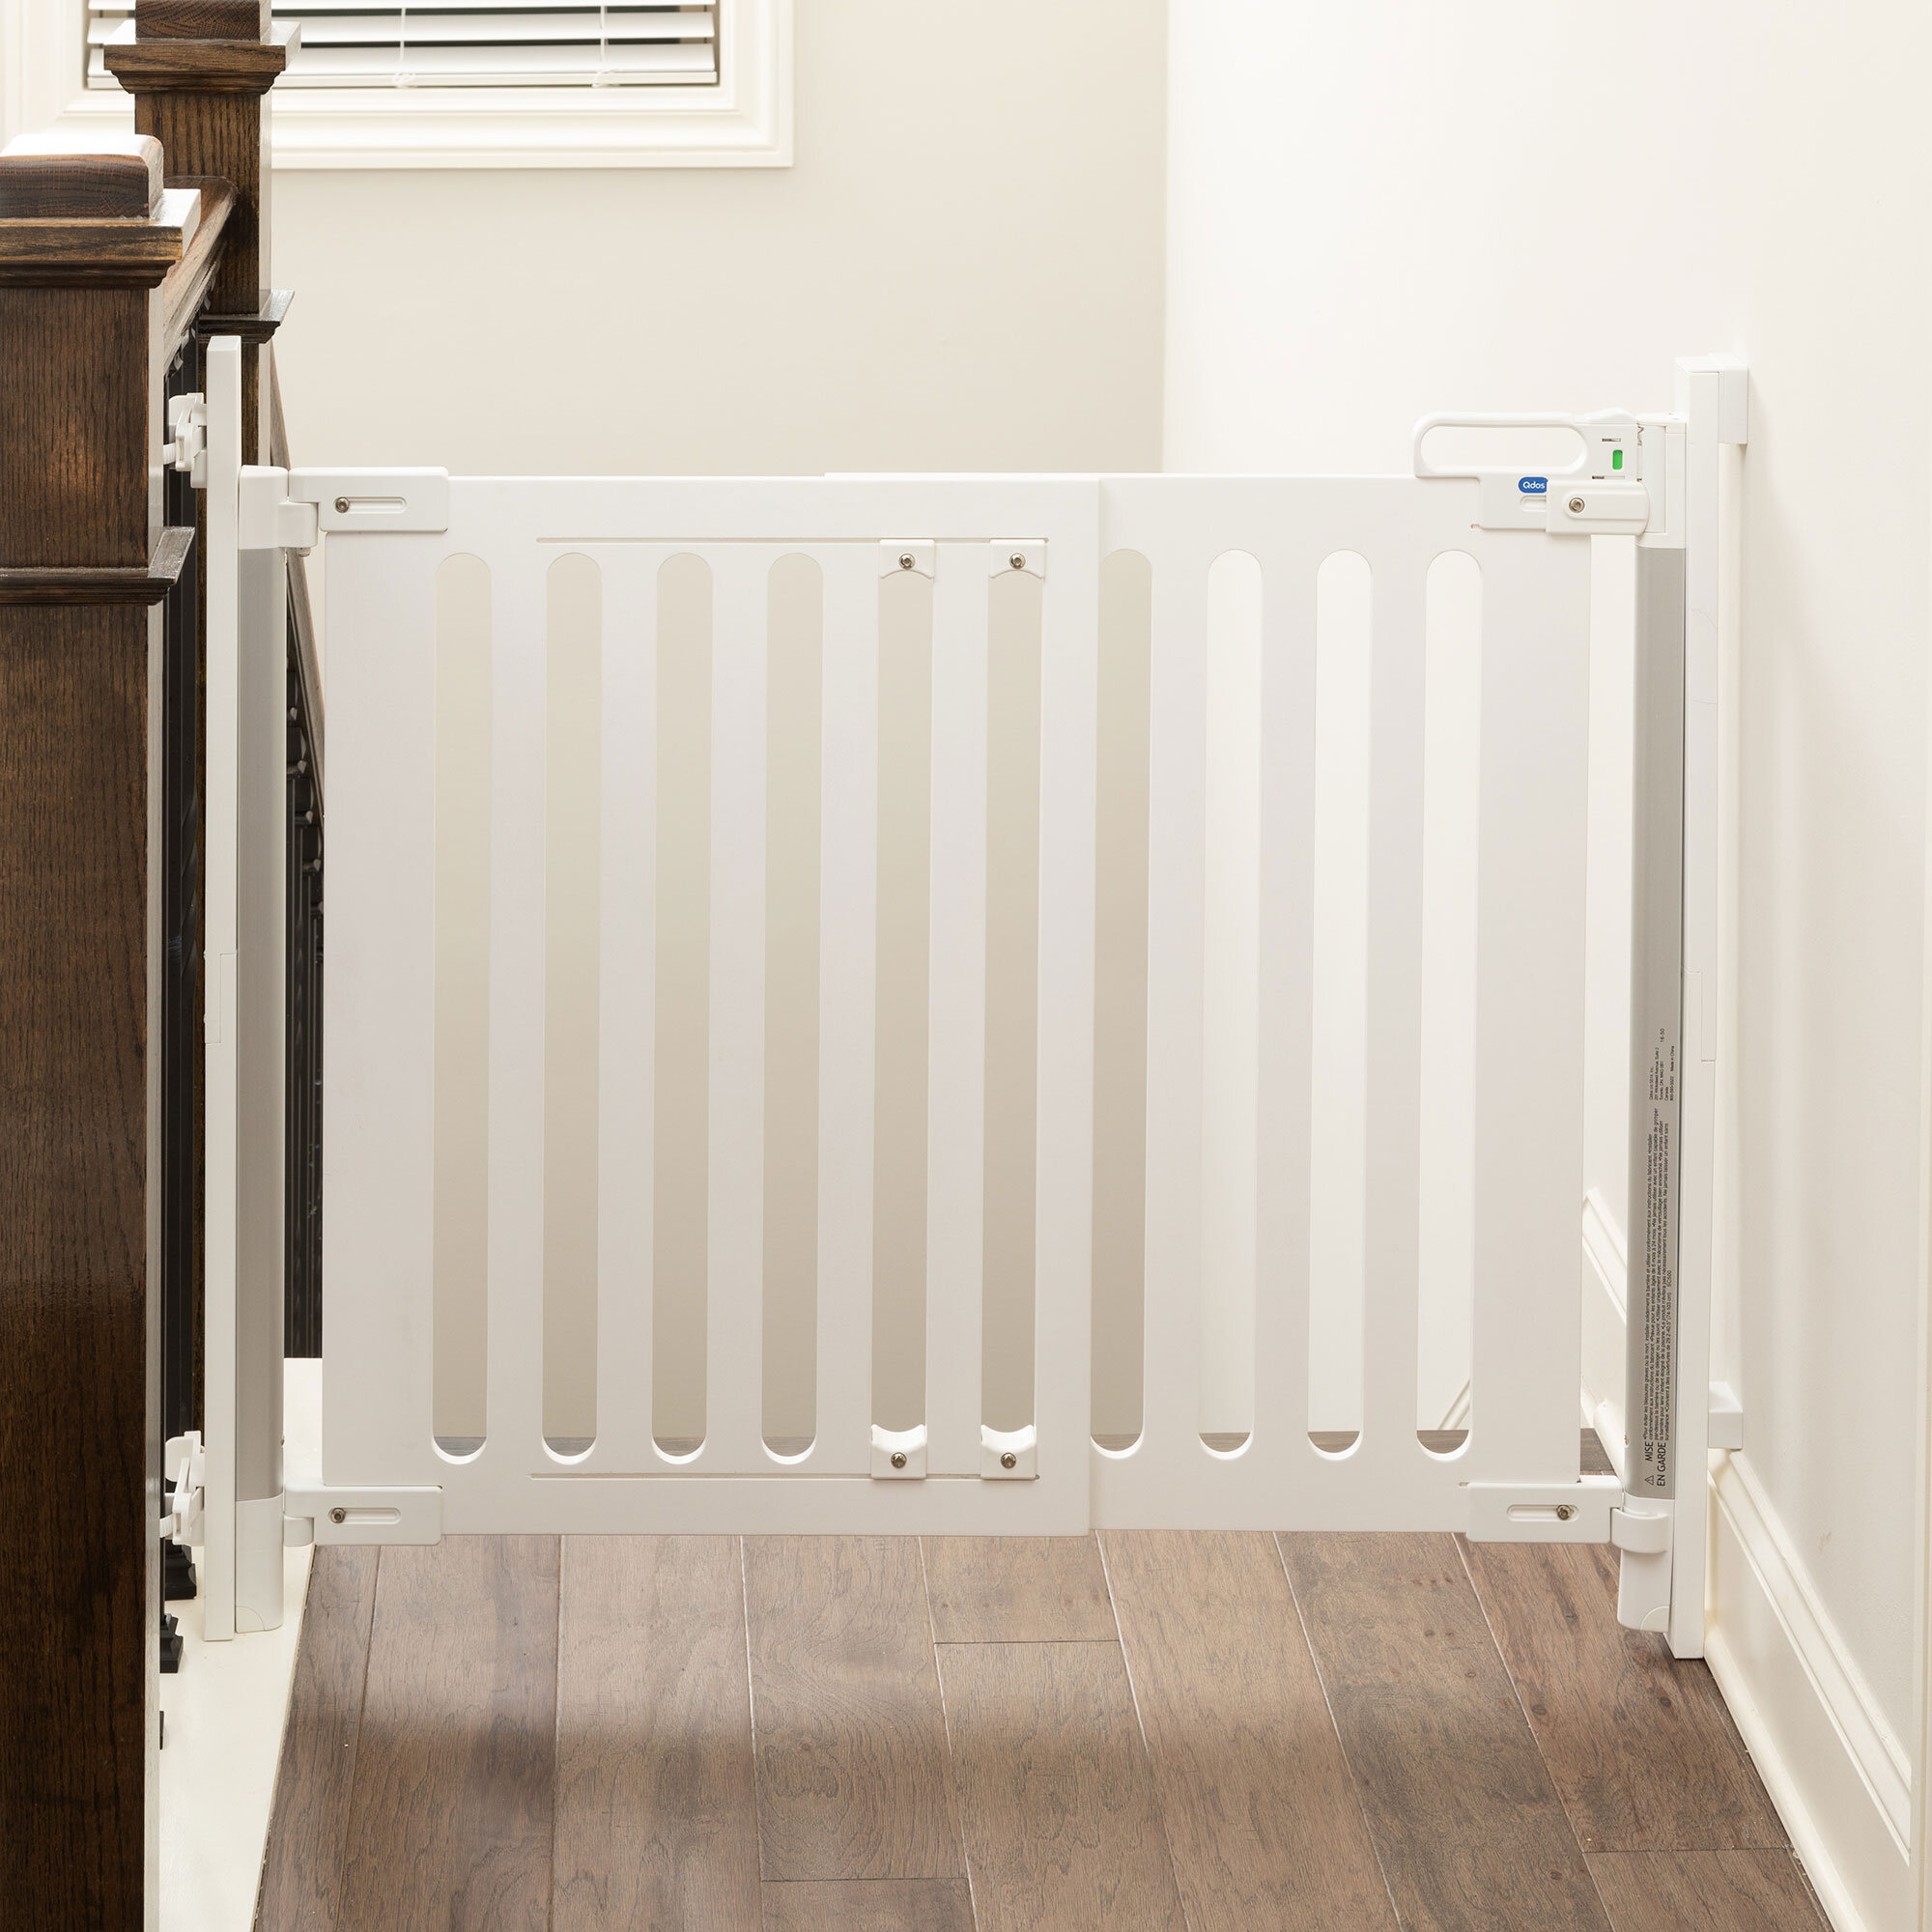 Adhesive Fridge/Freezer Lock — Qdos Baby Gates Child Safety and